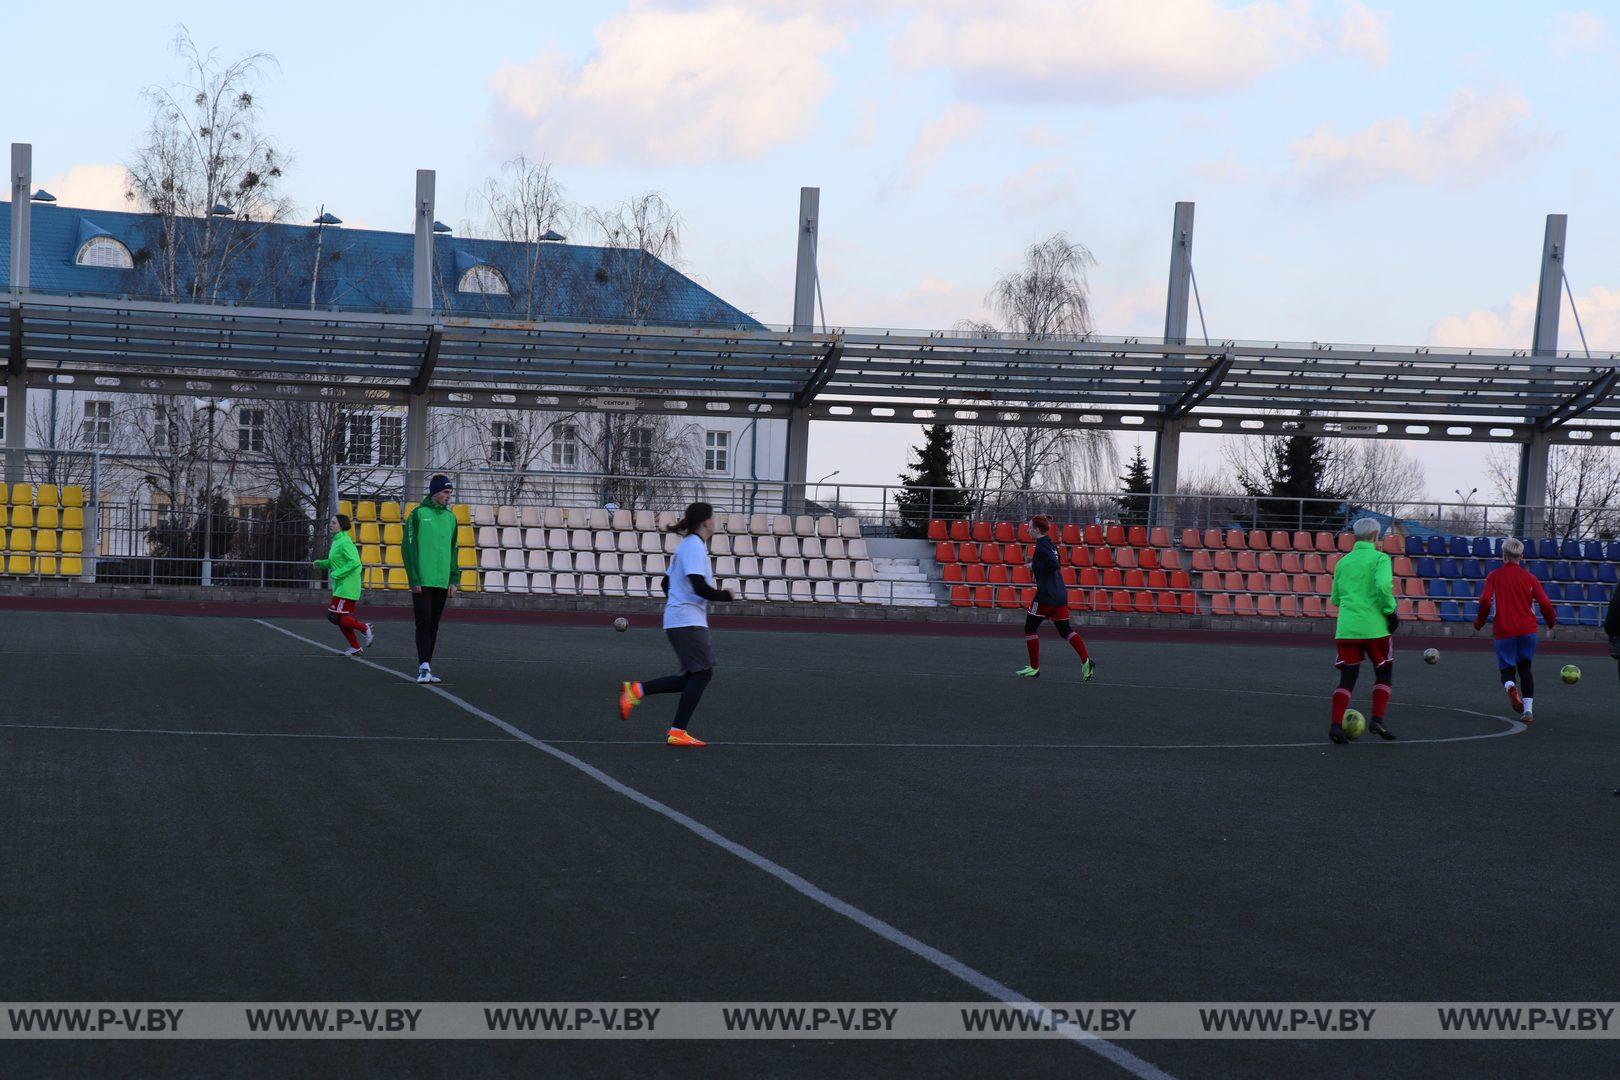 Женская футбольная команда «ДЮСШ-ПолесГУ» дебютирует в высшей лиге чемпионата Беларуси